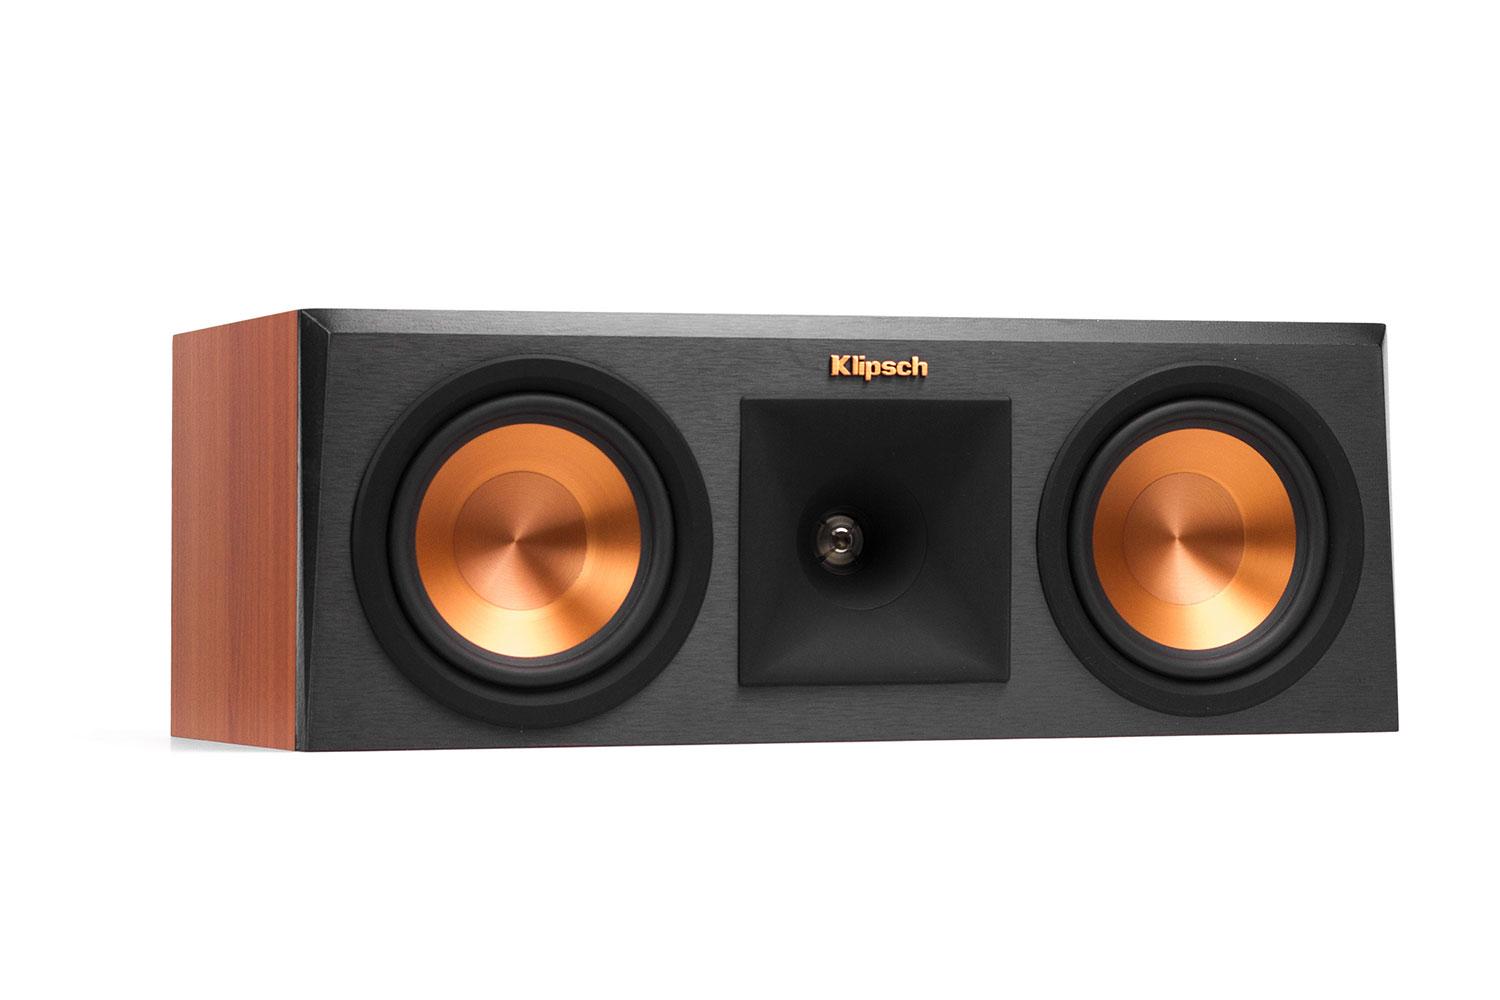 klipsch reference premier speaker system debuts at ces 2015 250c